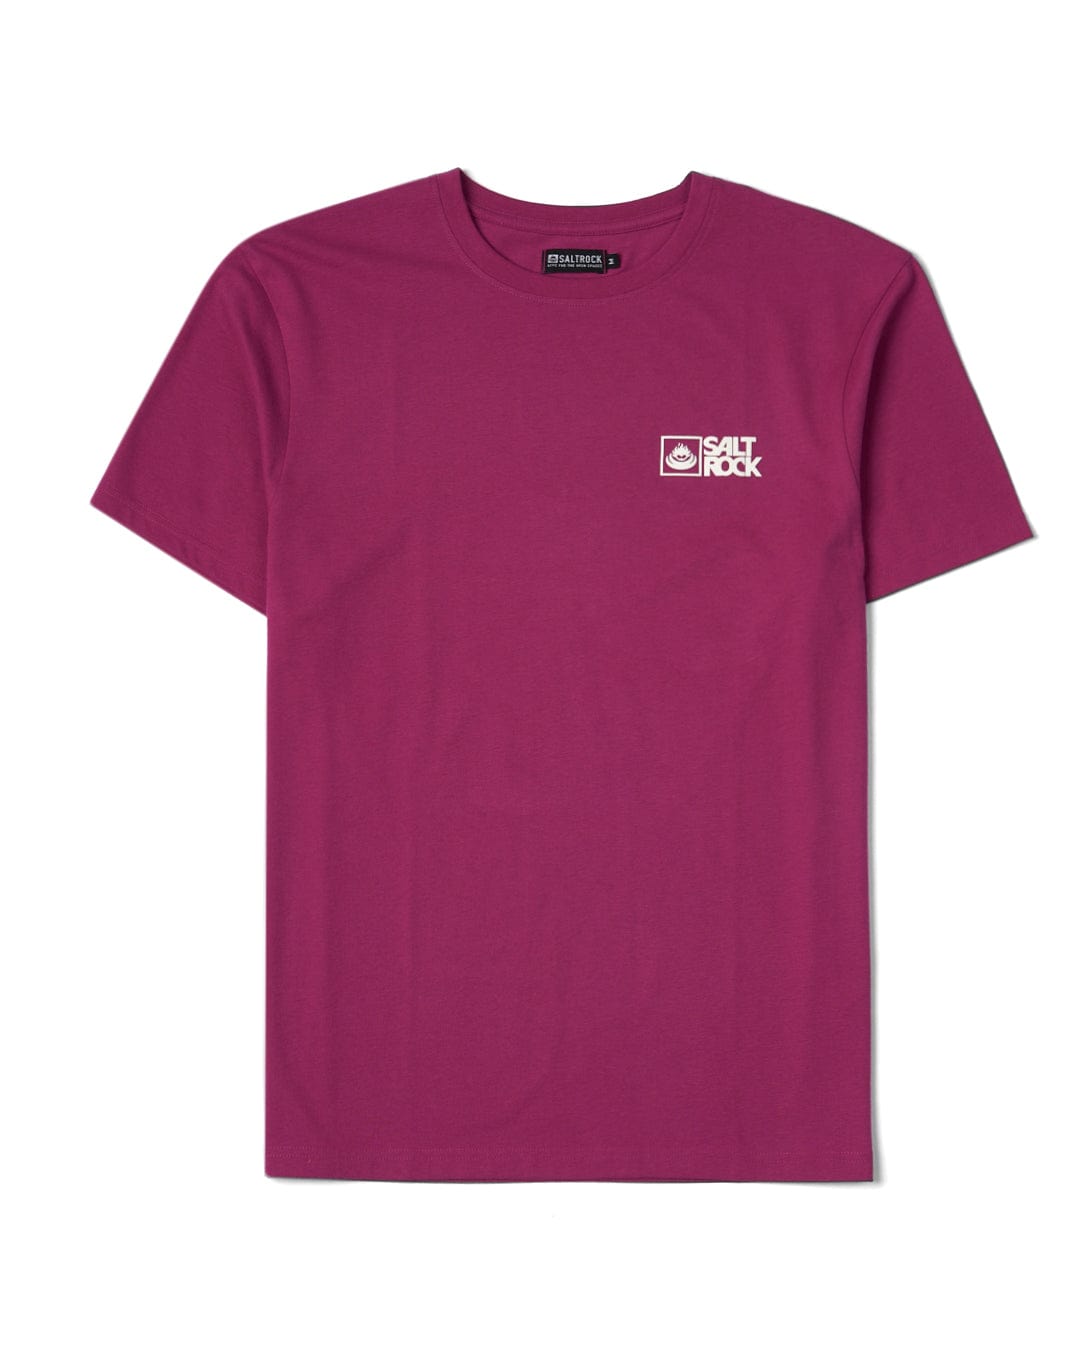 Saltrock Original - Mens Short Sleeve T-Shirt - Burgundy, Pink / XXL